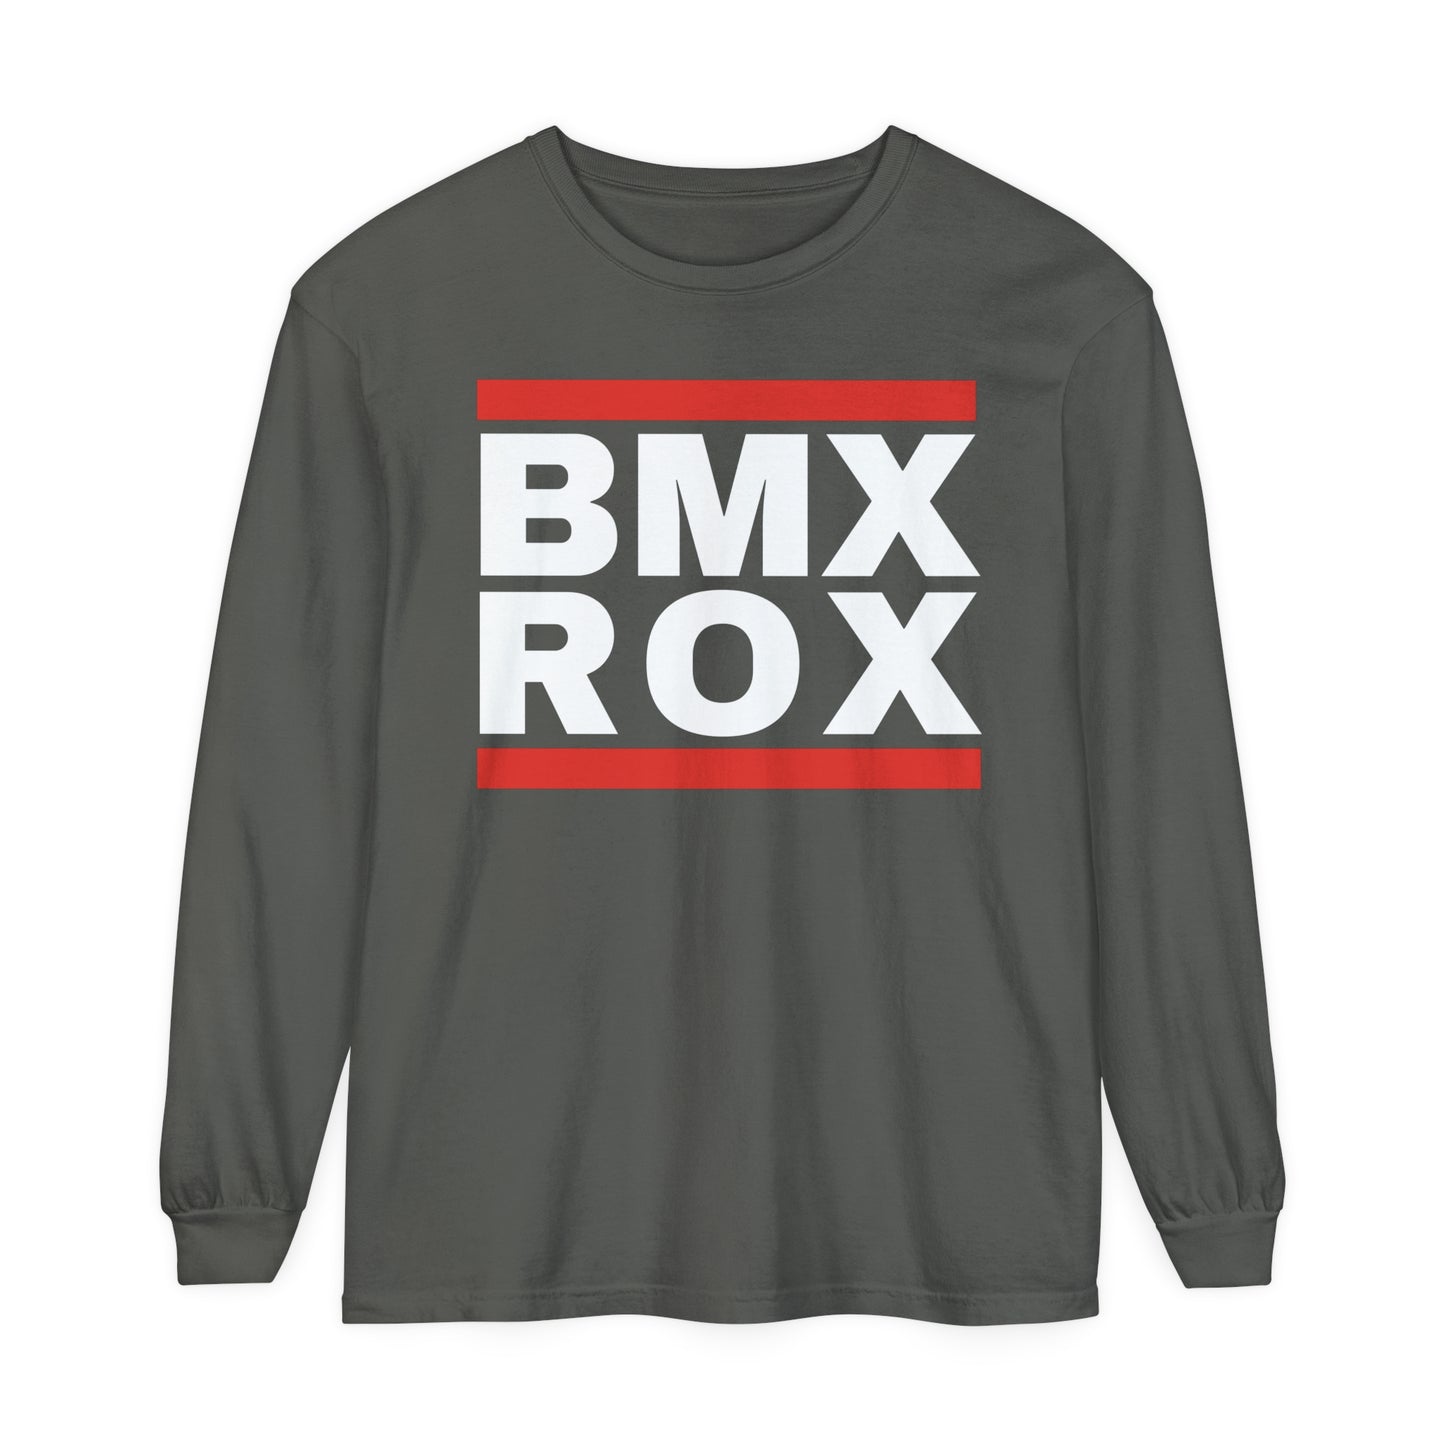 BMX ROX Long Sleeve T-Shirt